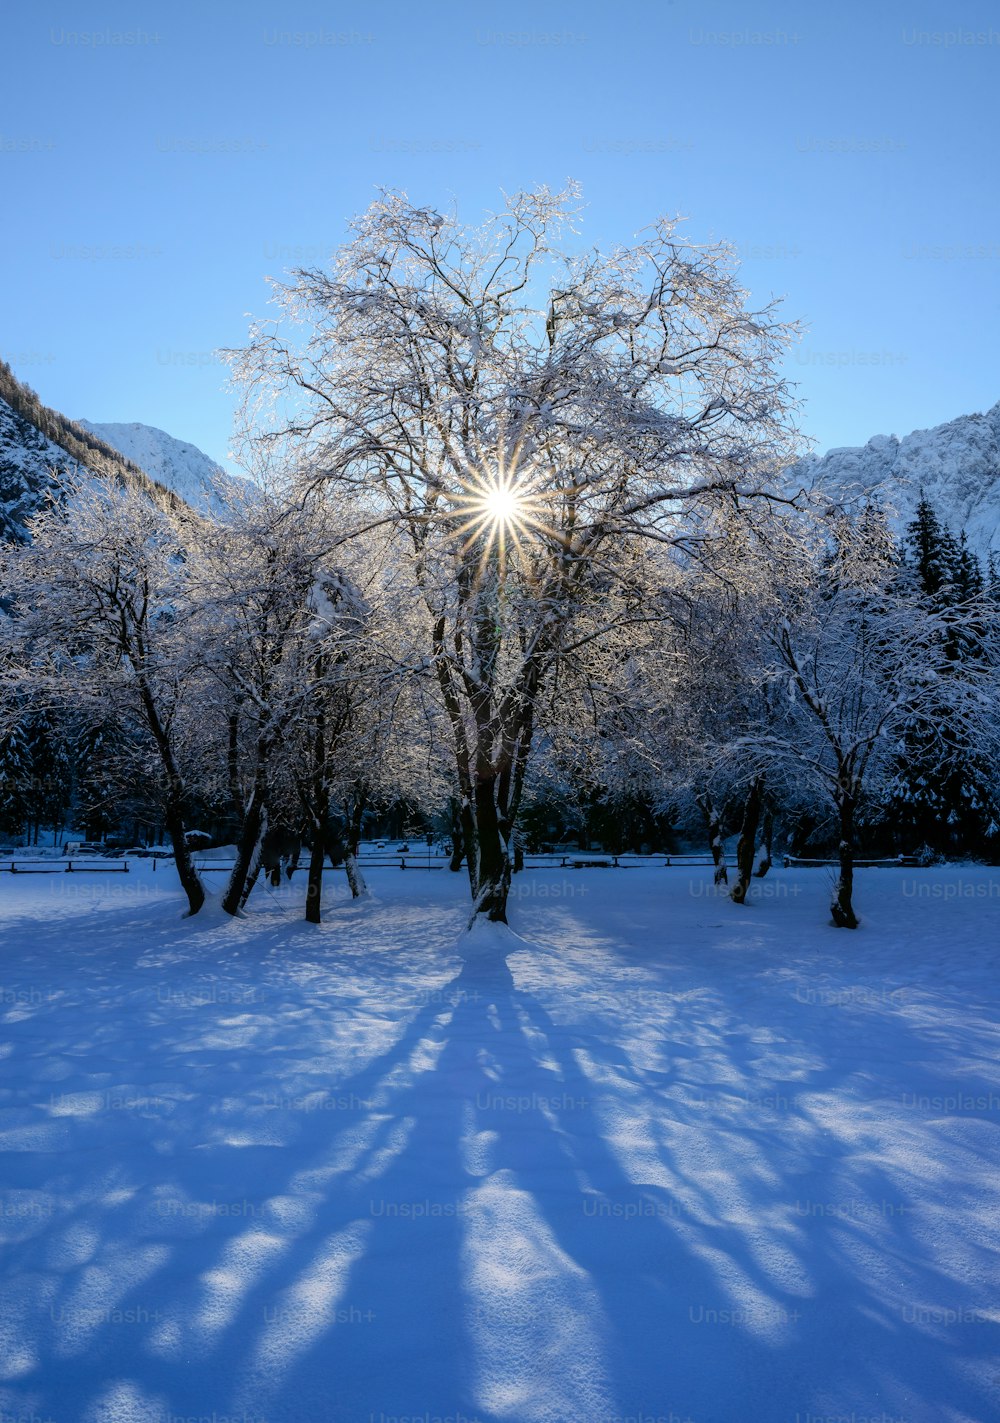 Die Sonne scheint hell durch die Bäume im Schnee